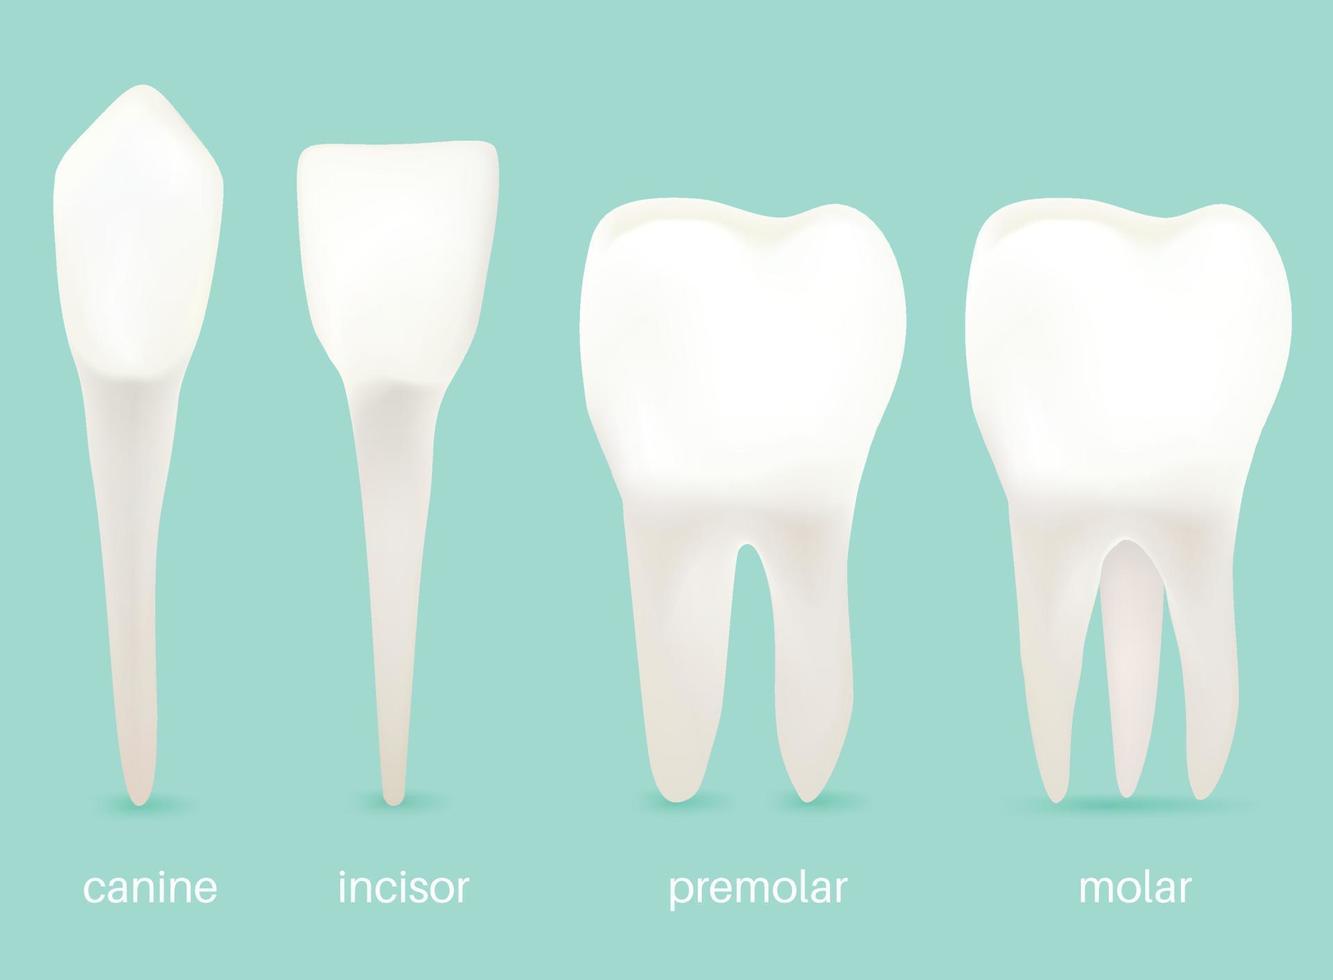 de 4 typer av tänder. vektor